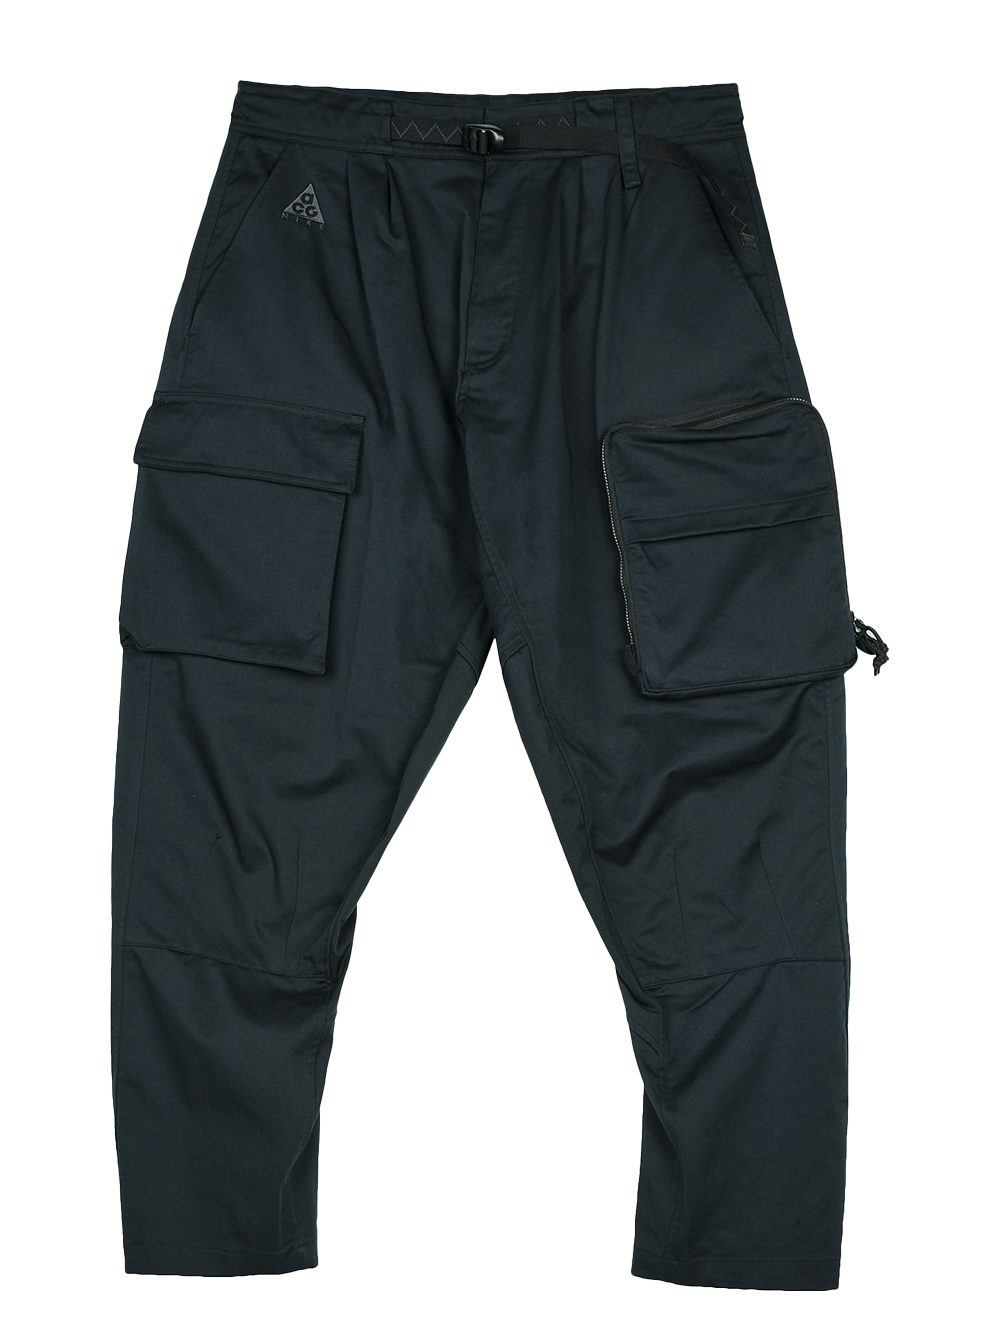 Nike ACG Woven Cargo Pant (US Sizing) Black